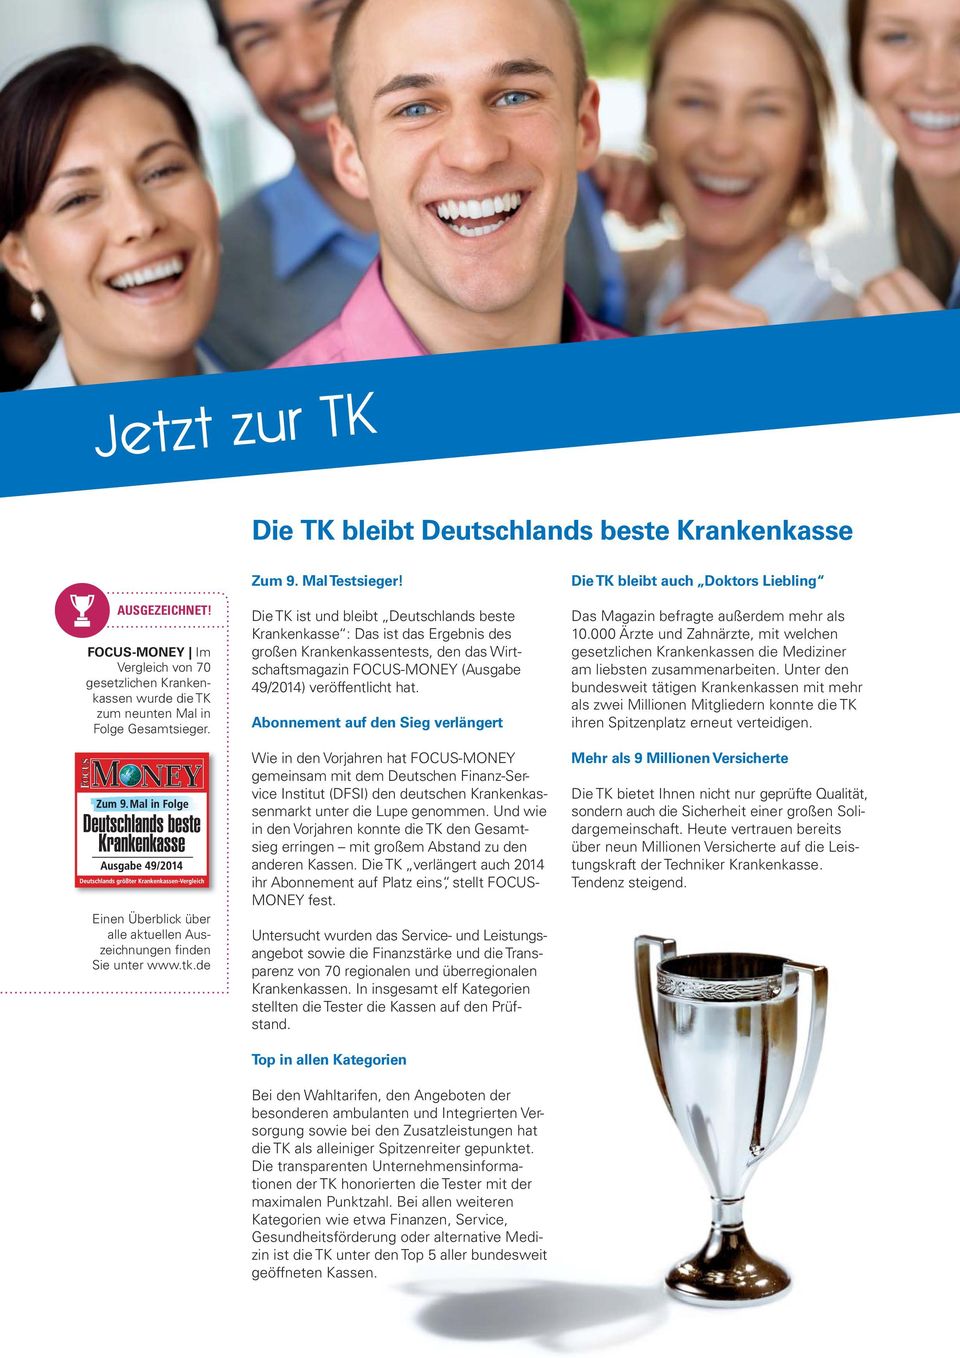 Die TK ist und bleibt Deutschlands beste Krankenkasse : Das ist das Ergebnis des großen Krankenkassentests, den das Wirtschaftsmagazin FOCUS-MONEY (Ausgabe 49/2014) veröffentlicht hat.